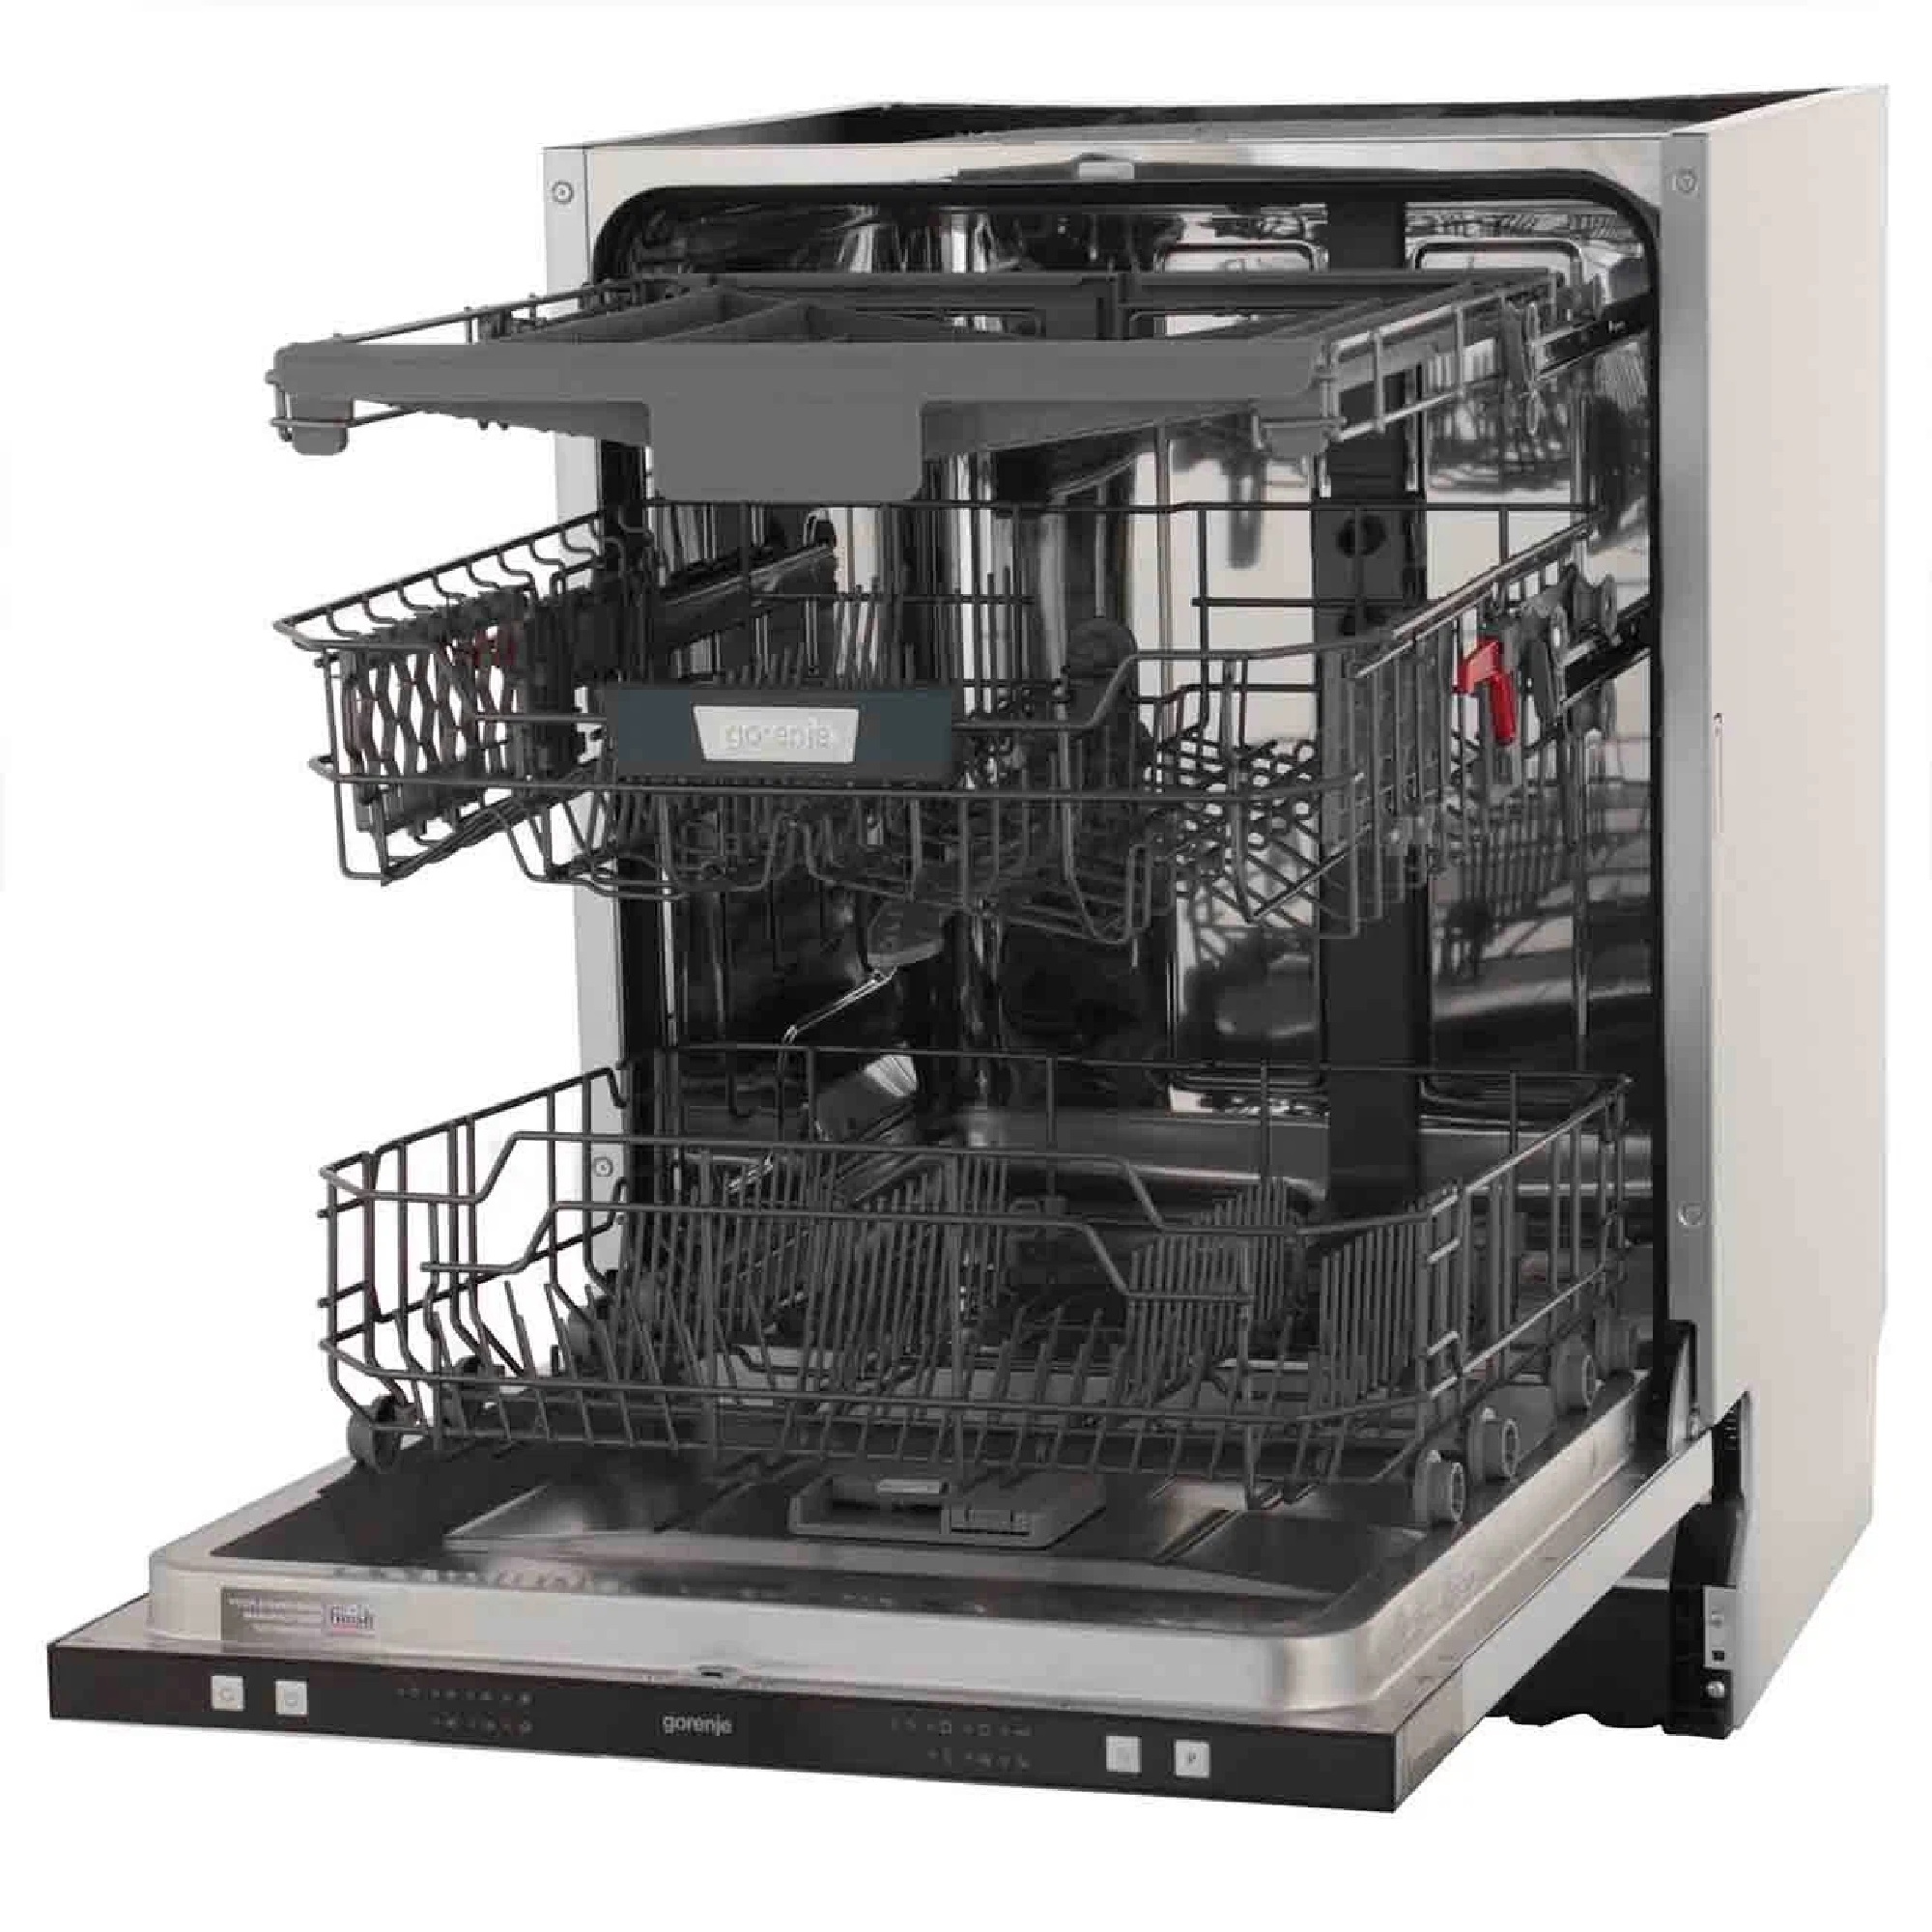 Посудомоечная машина горение встраиваемая 60 см. Встраиваемая посудомоечная машина Gorenje gv62212. Встраиваемая посудомоечная машина 60 см Gorenje gv62212. Посудомоечная машина Gorenje gv62211. Посудомоечная машина горение GV 62212.